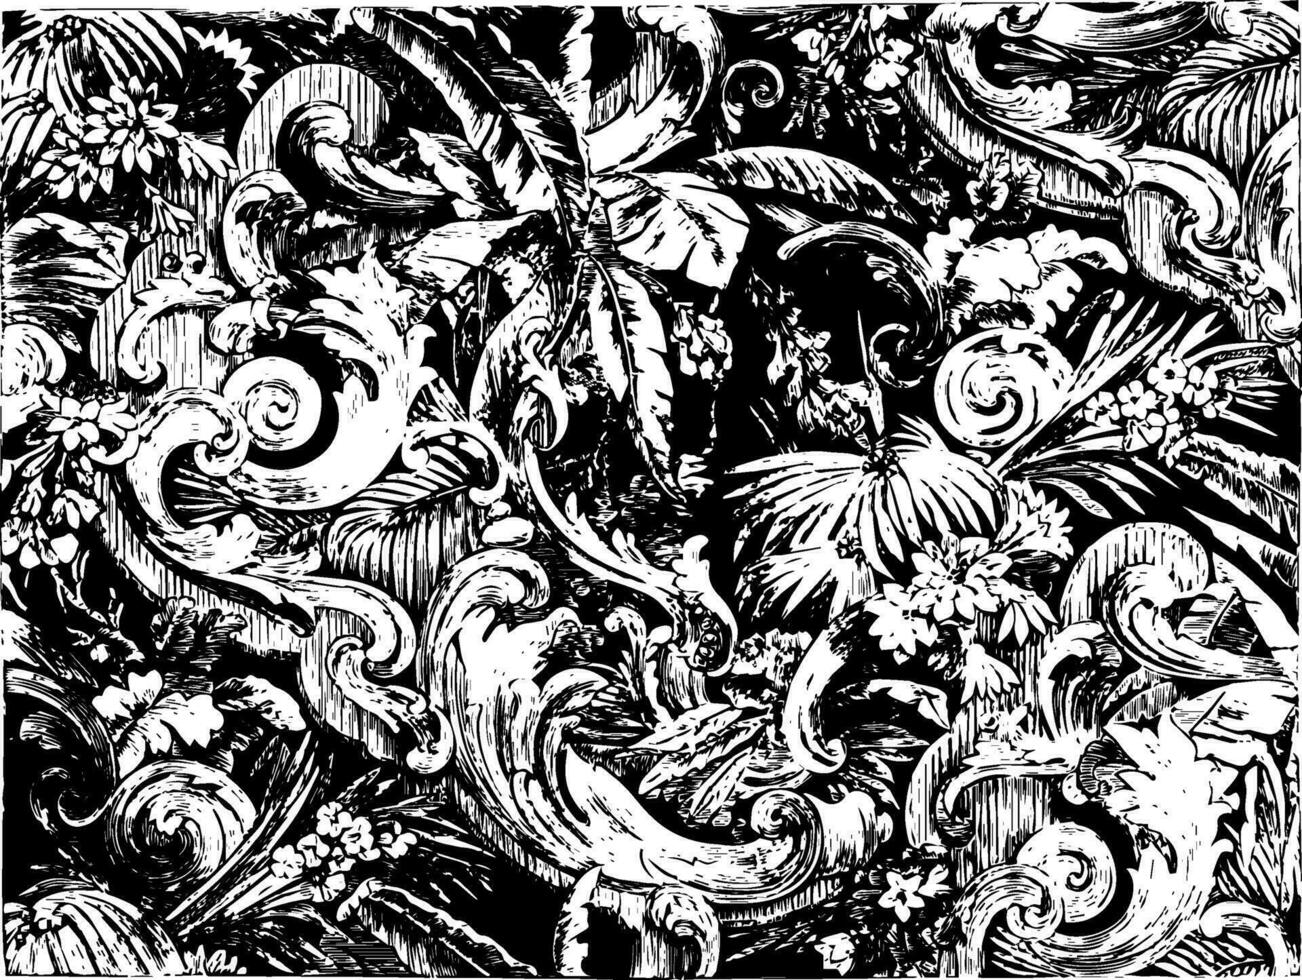 tapijt is ontworpen met scrollt en bladeren van de palm boom in een fluweel materiaal, wijnoogst gravure. vector